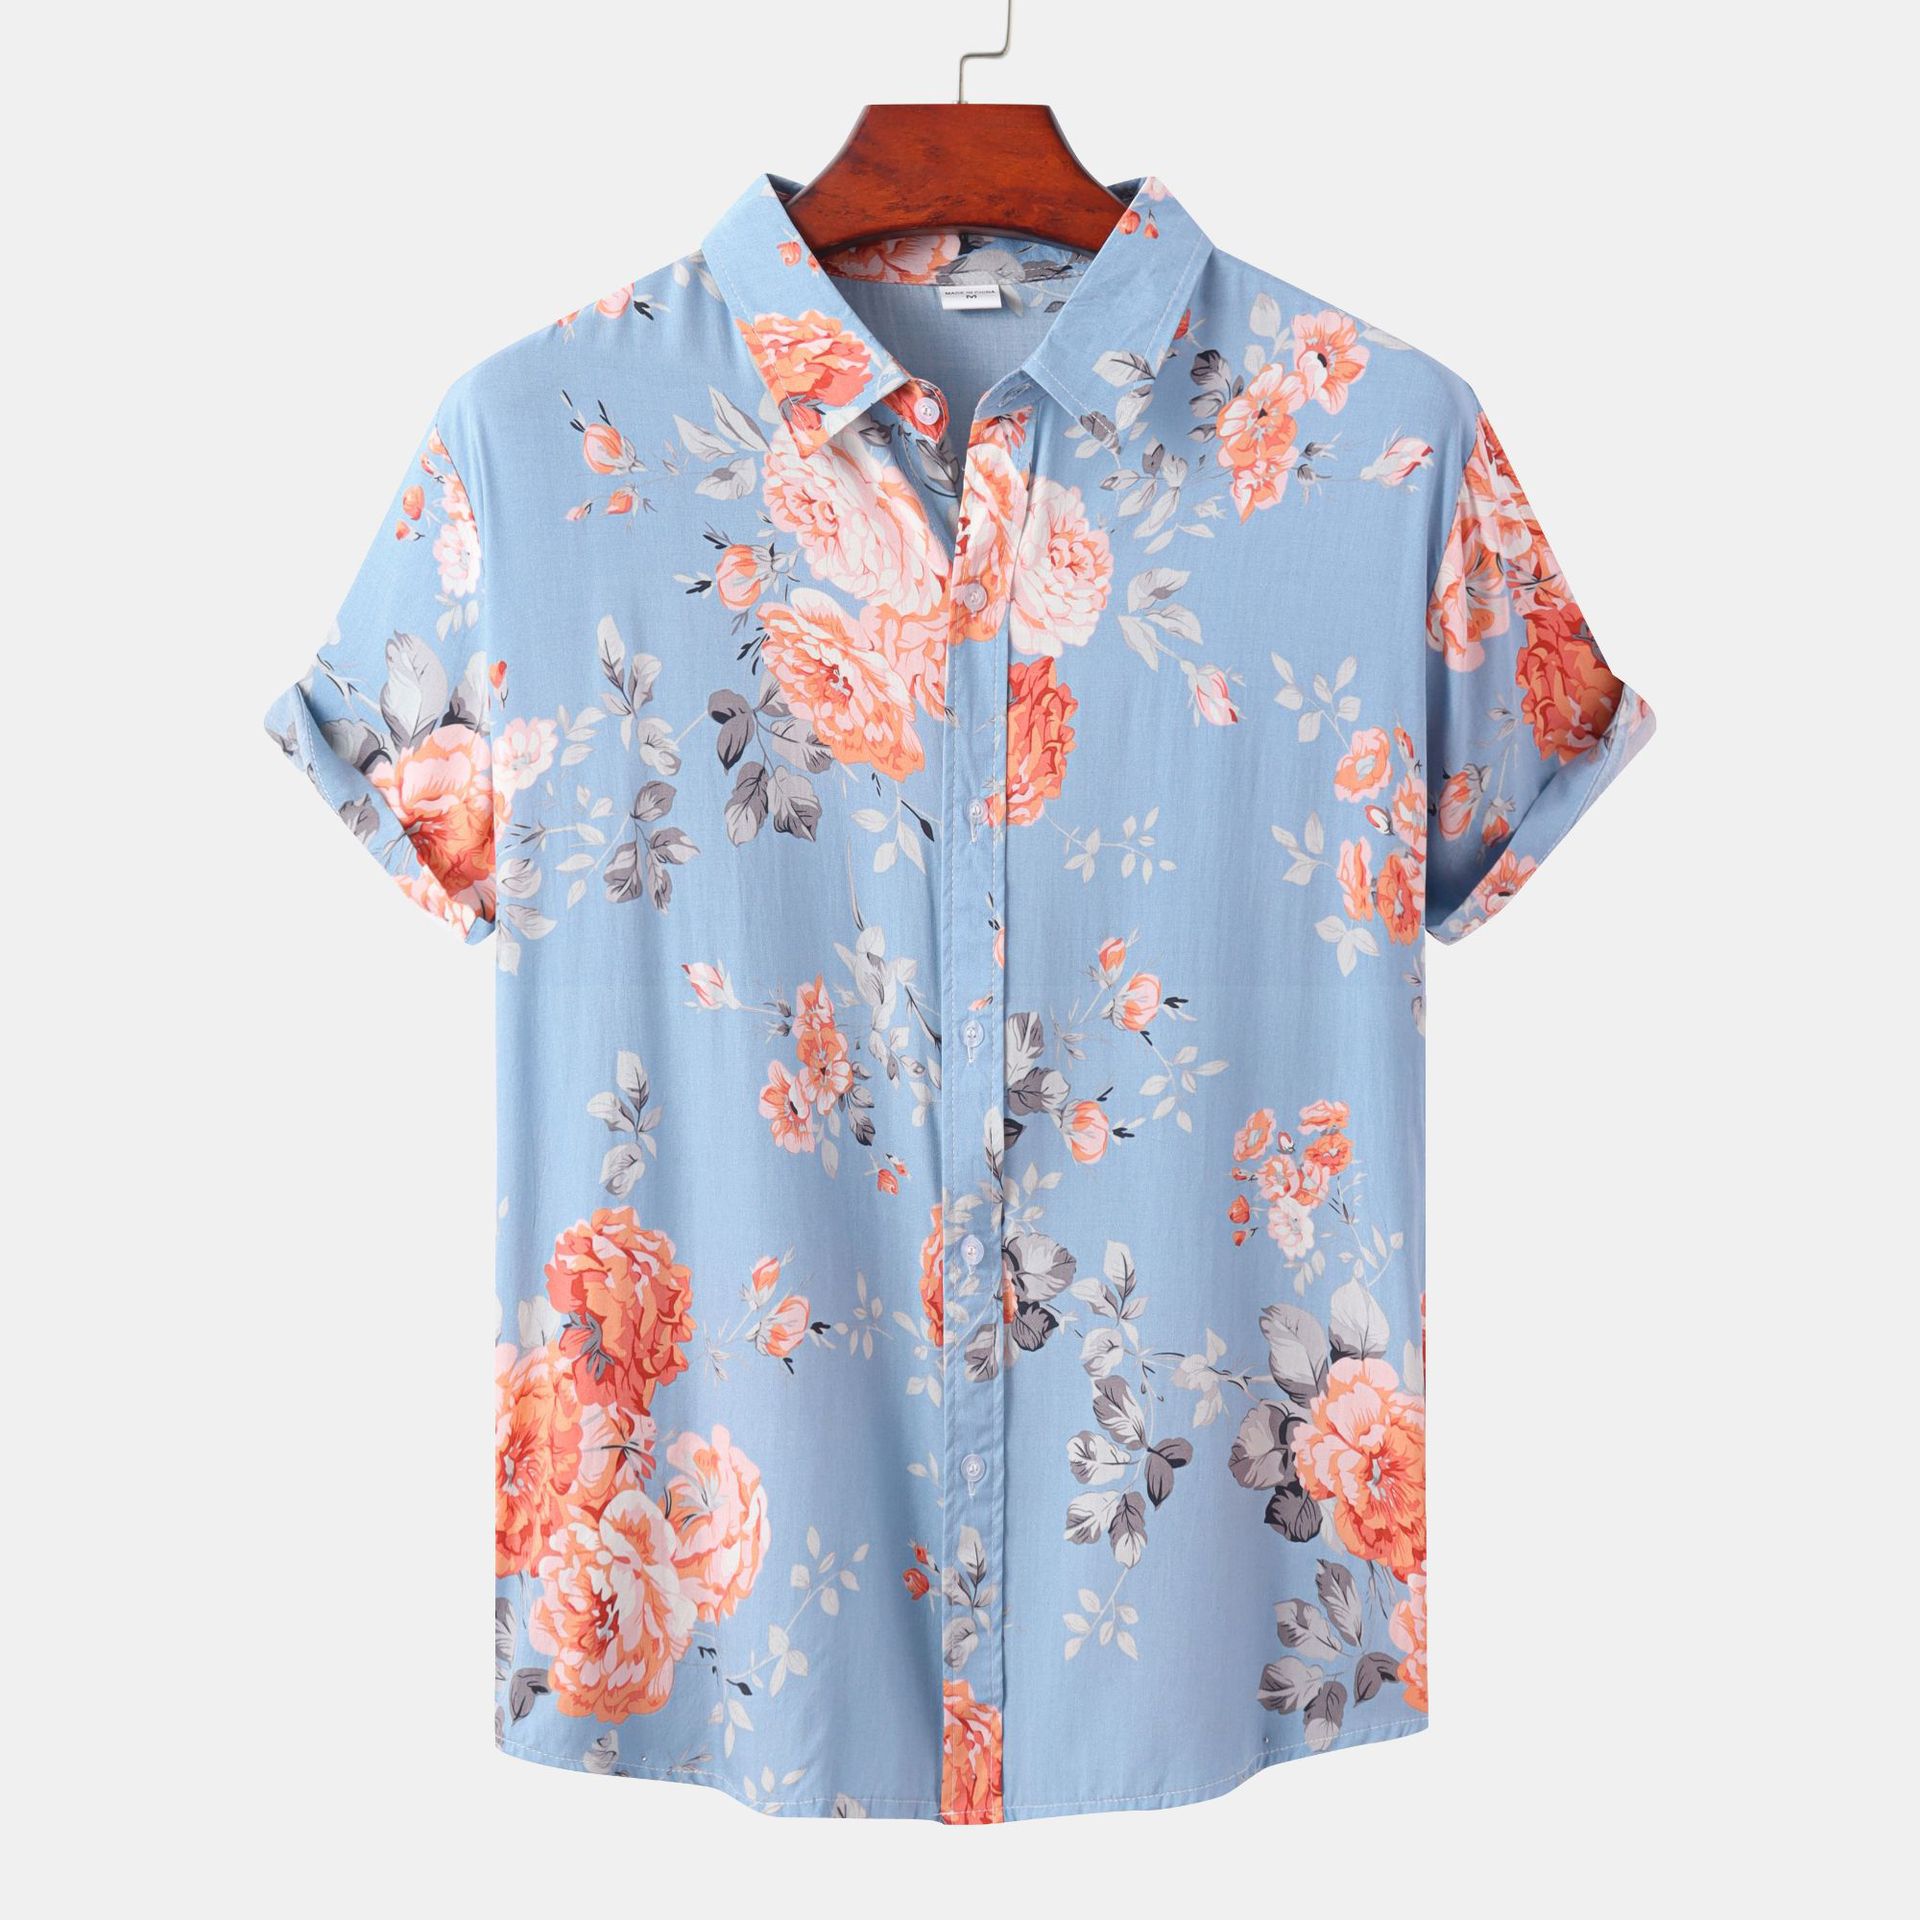 Men's Short-Sleeved Resort Style Shirt